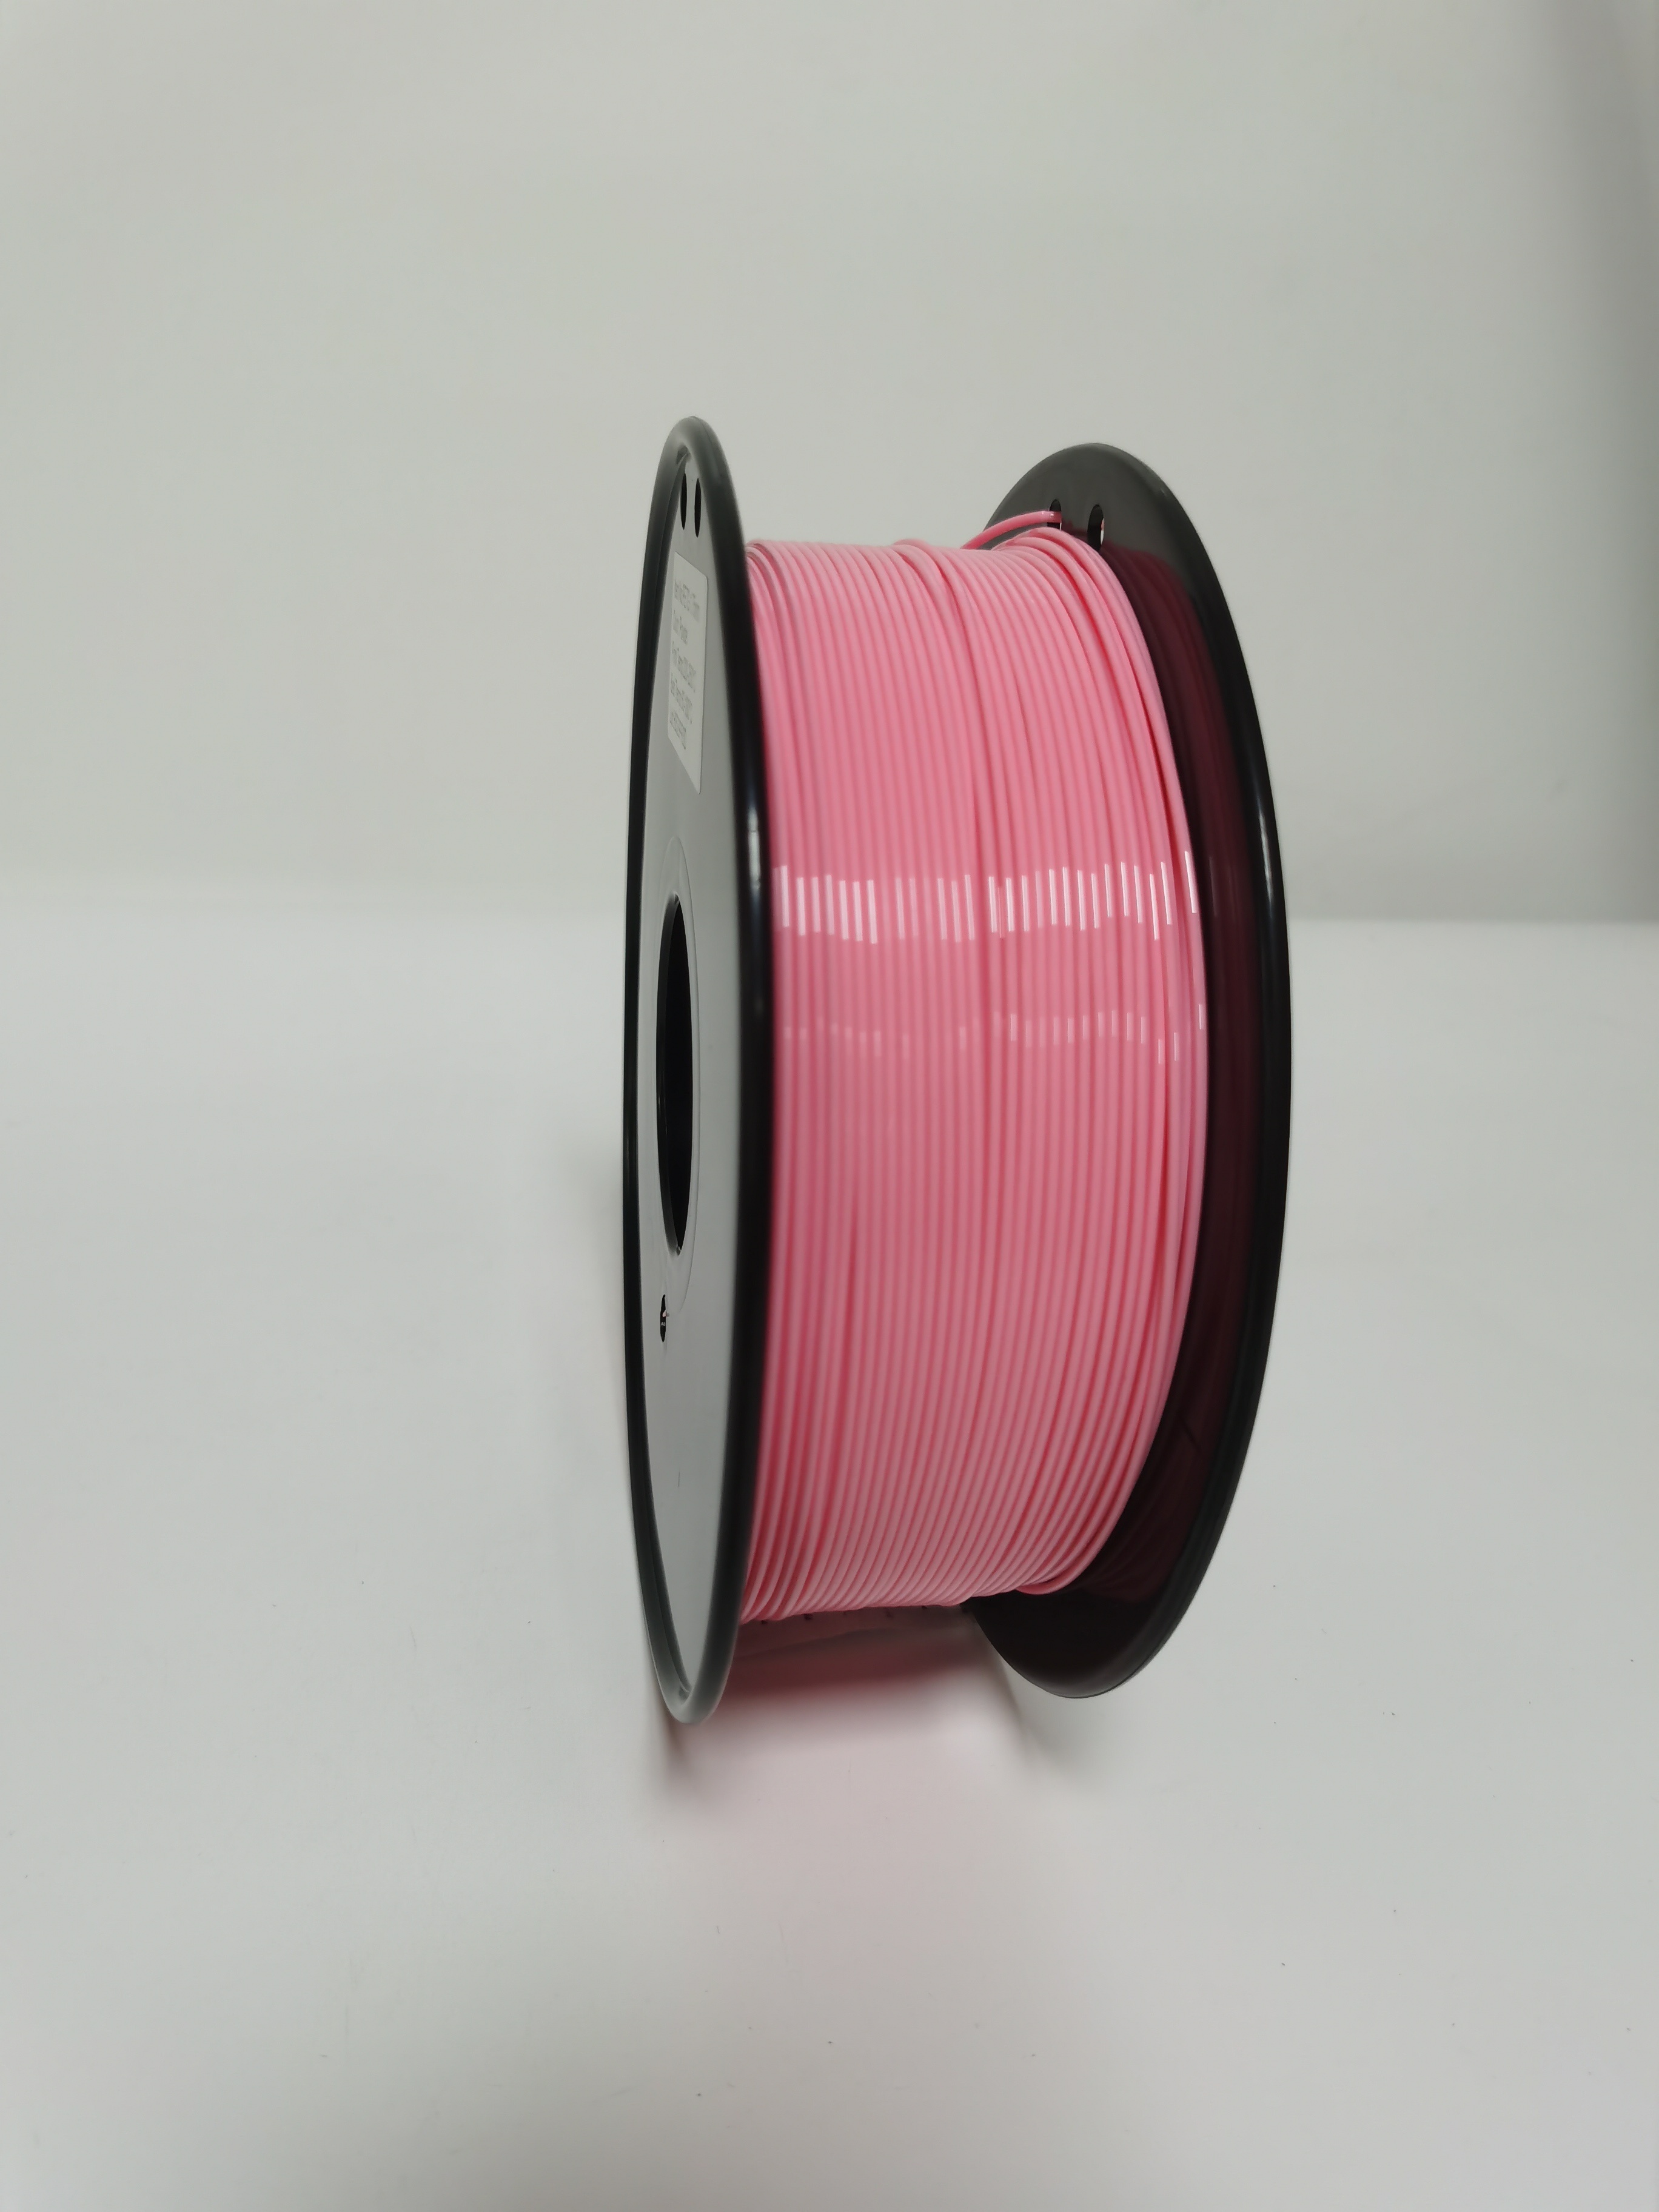 Filamento Petg Rojo 1.75 mm filamento para impresora 3d